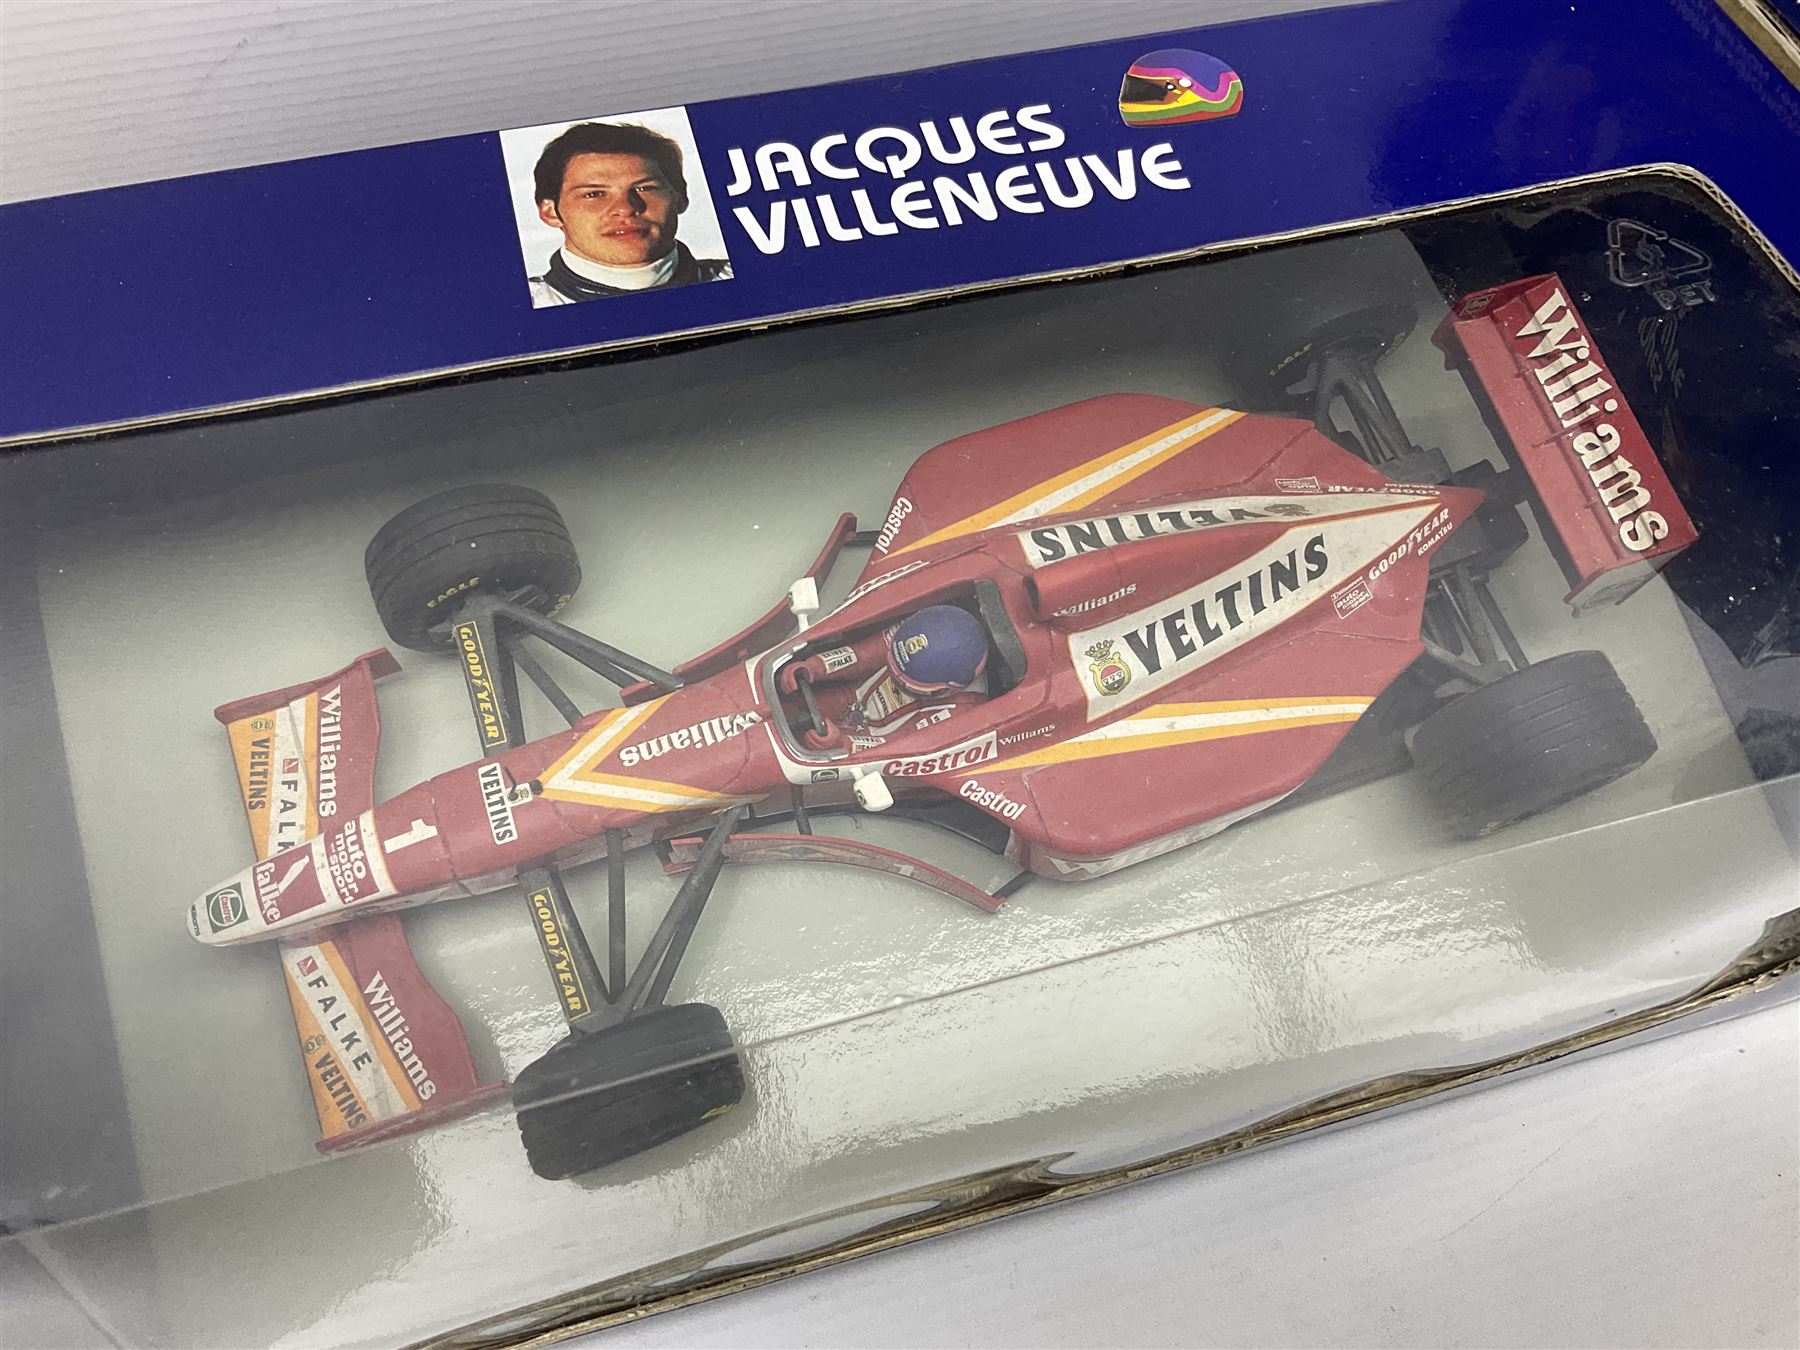 Four Paul's Model Art 1:18 scale die-cast racing cars - Jacques Villeneuve Williams Mecachrome Launc - Image 3 of 9